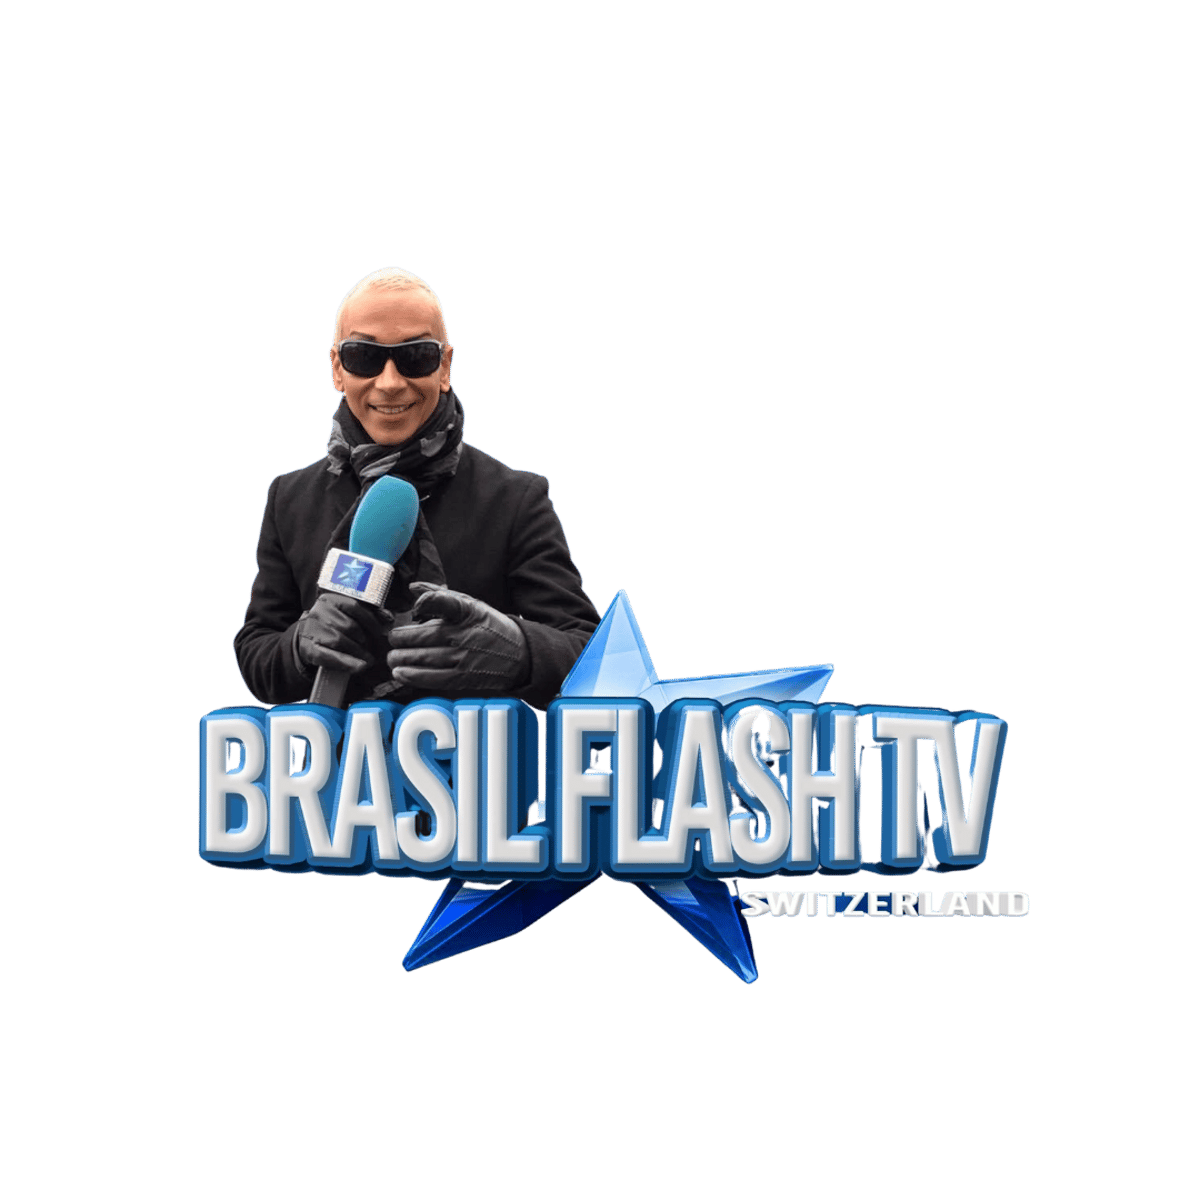 (c) Brasilflashtv.com